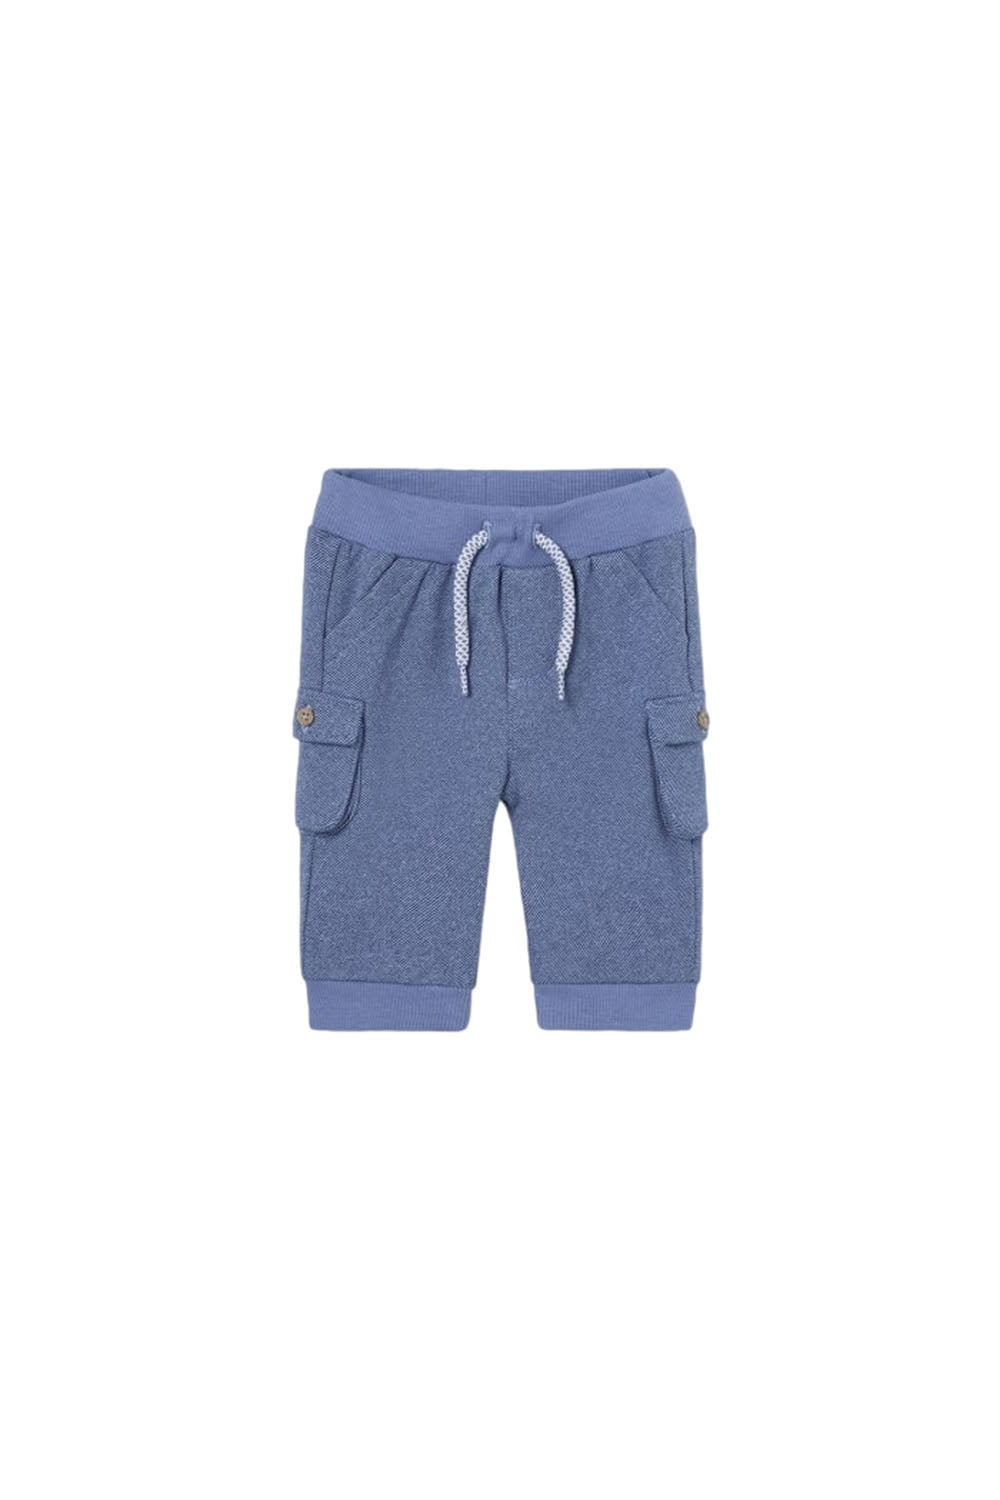 Παιδικό Παντελόνι Για Αγόρι MAYORAL  13-02518-041 Μπλε